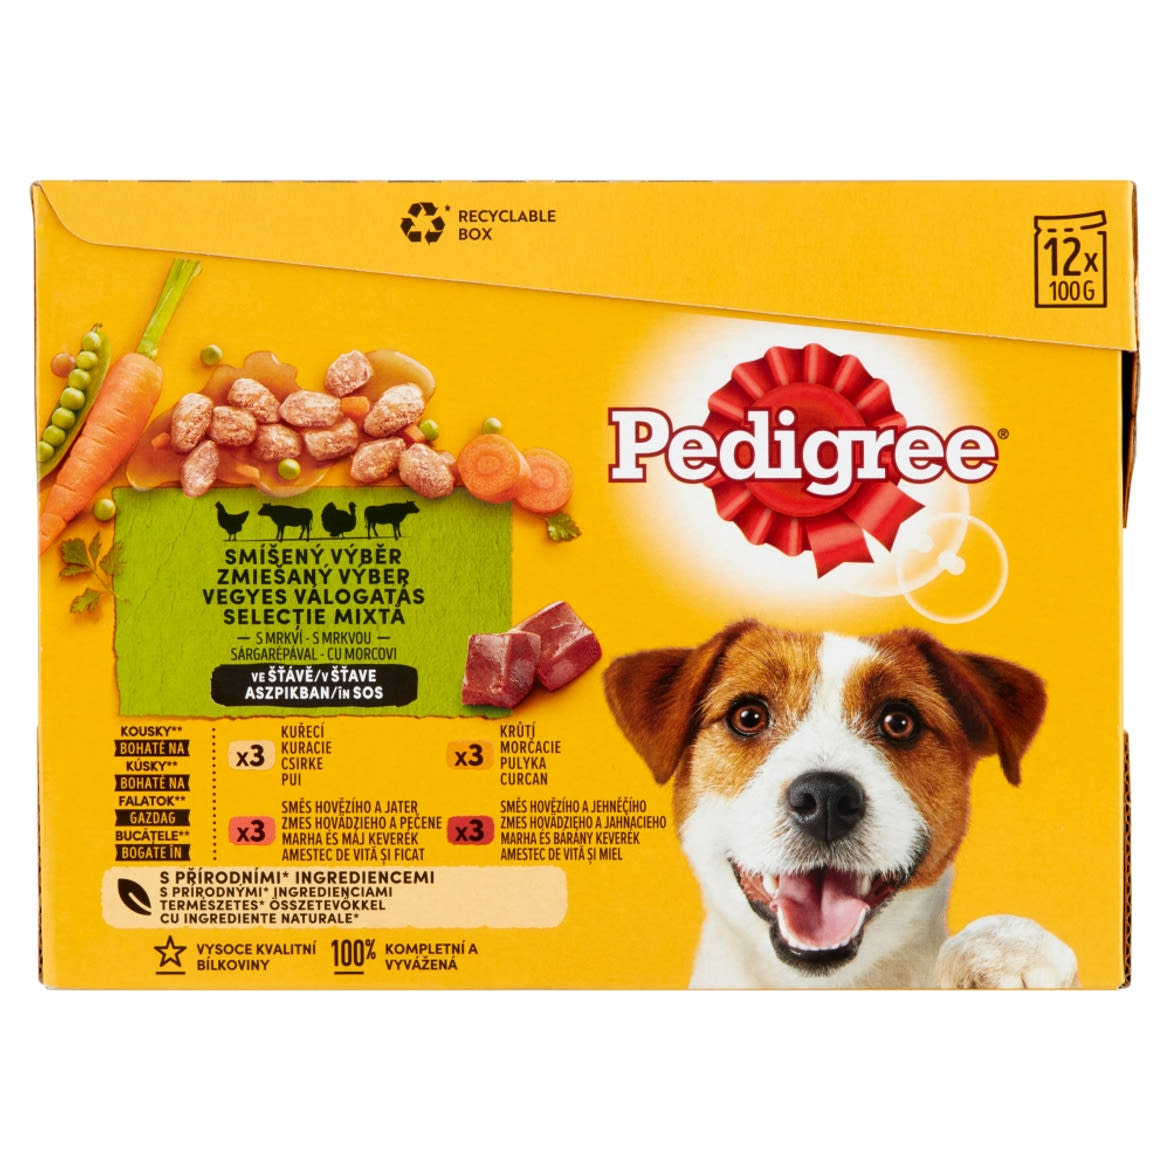 Pedigree teljes értékű vegyes válogatás eledel felnőtt kutyák részére sárgarépával 12 x